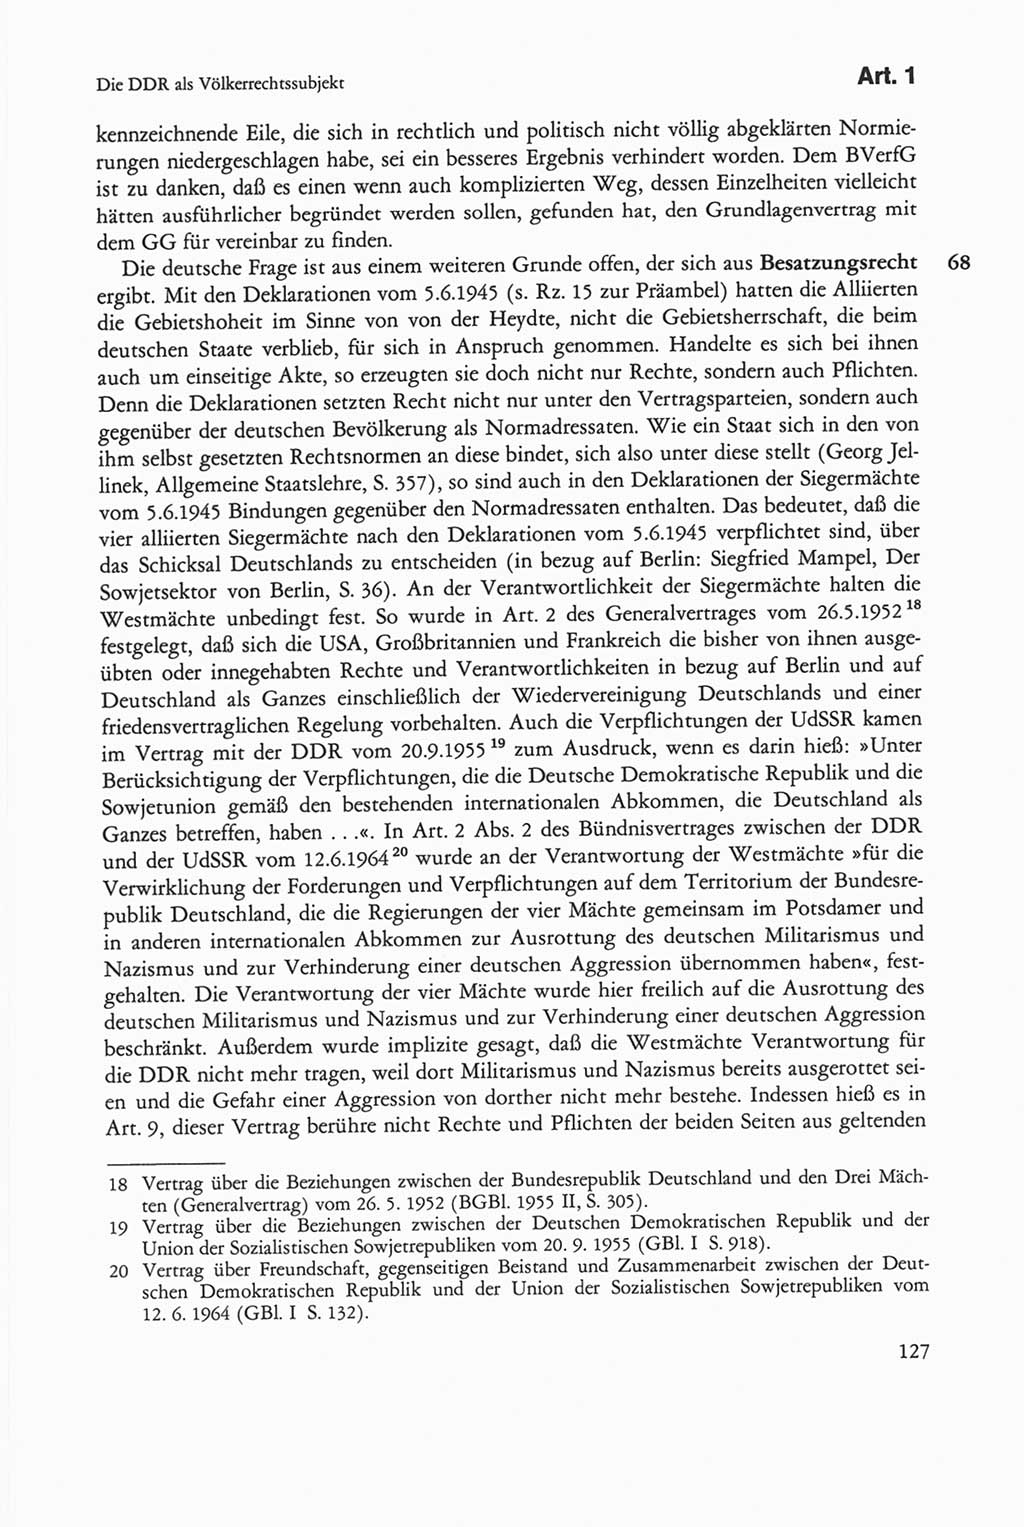 Die sozialistische Verfassung der Deutschen Demokratischen Republik (DDR), Kommentar 1982, Seite 127 (Soz. Verf. DDR Komm. 1982, S. 127)